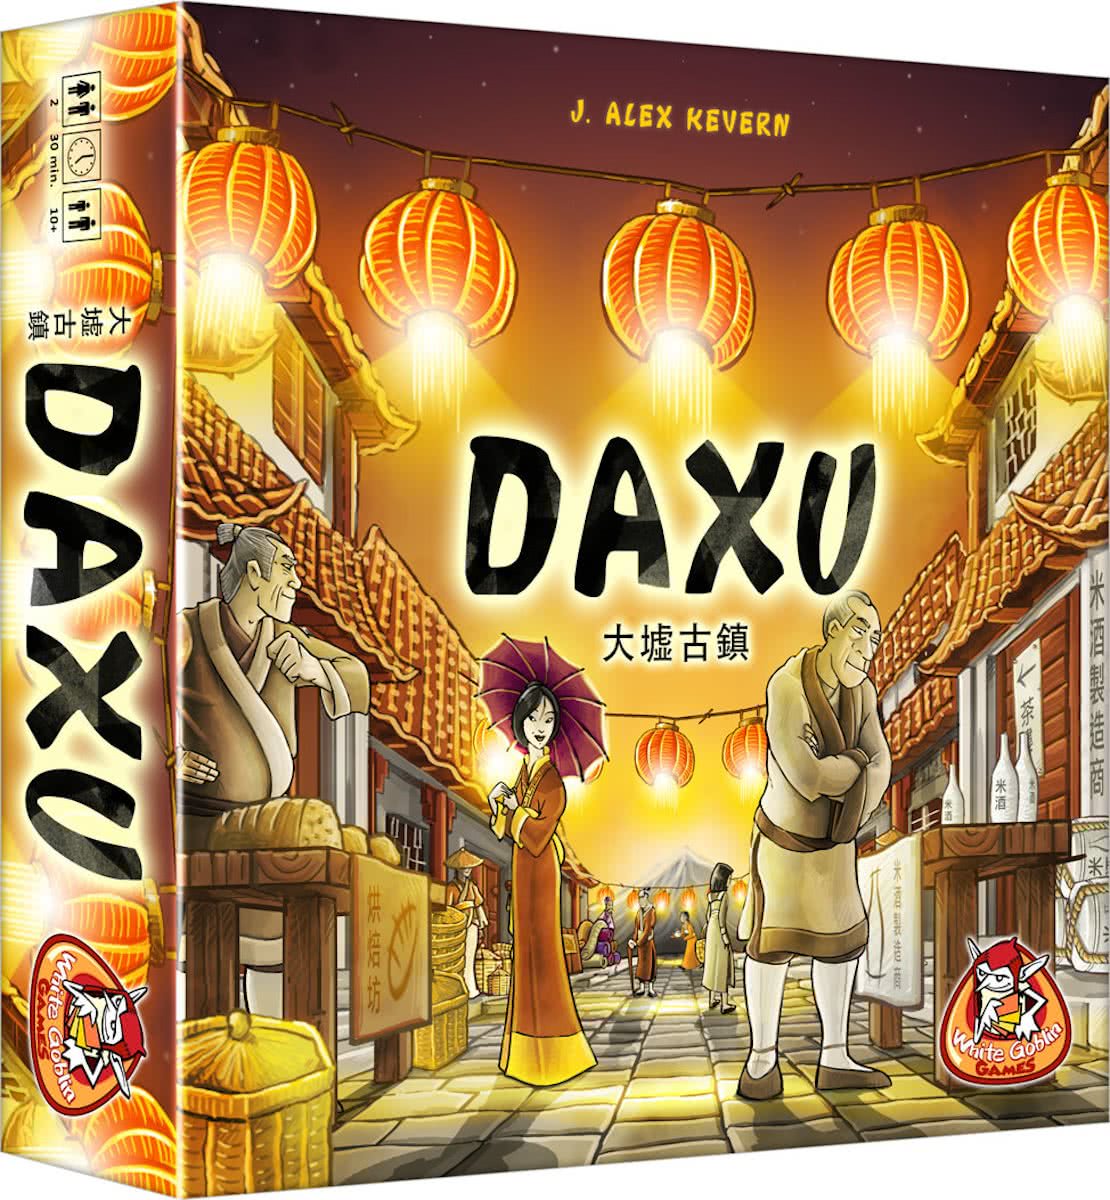 Daxu description reviews